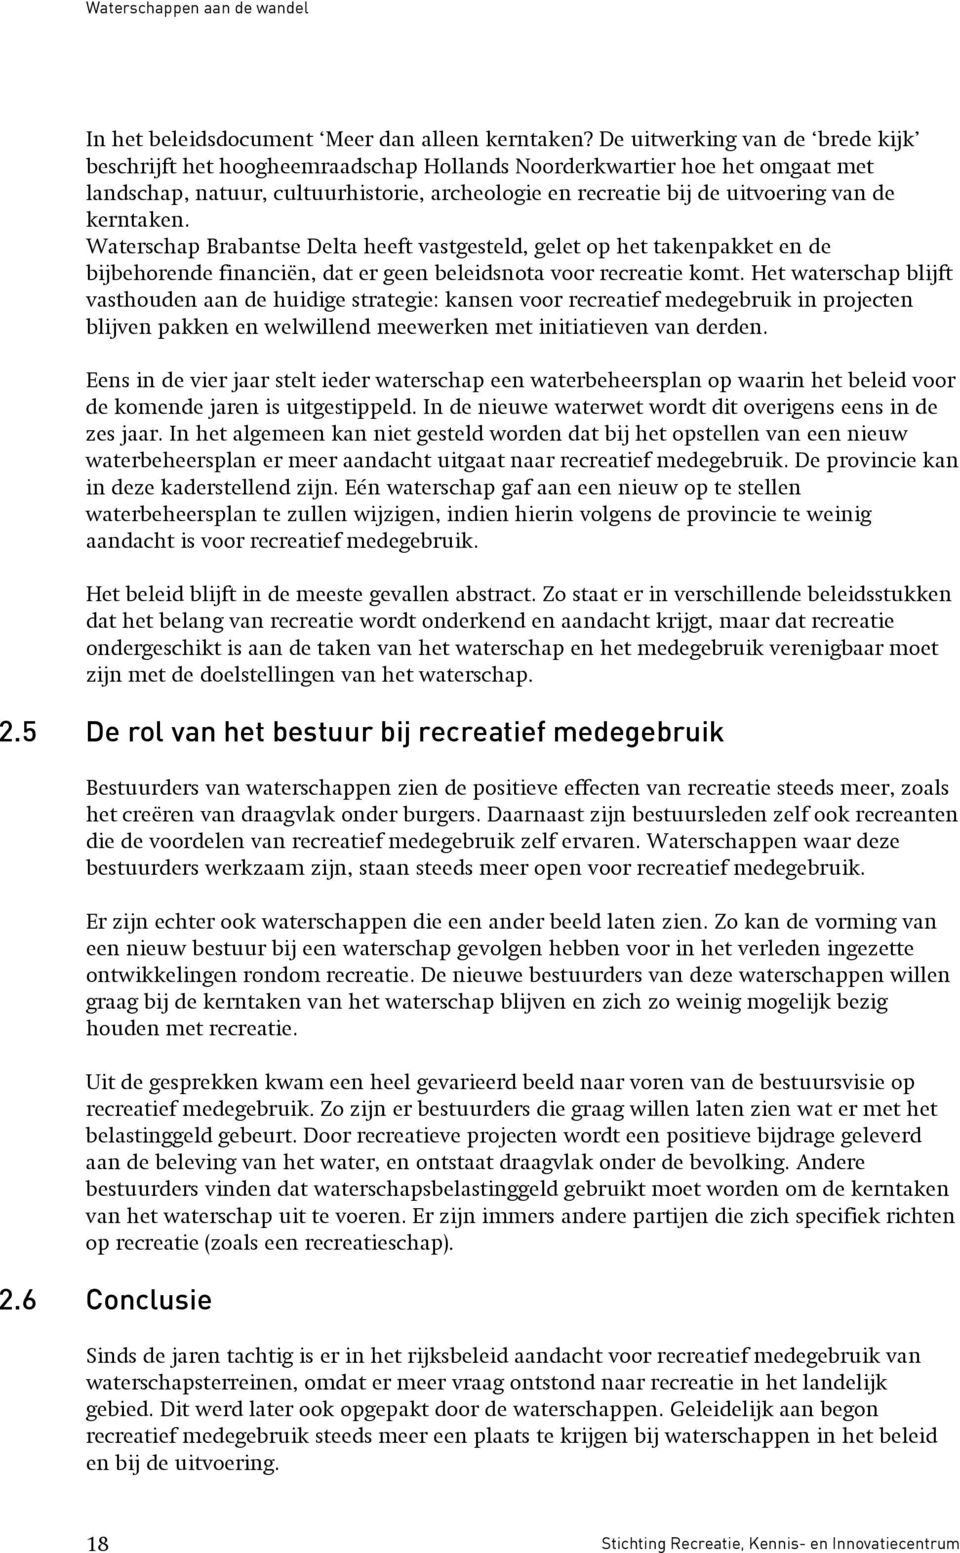 kerntaken. Waterschap Brabantse Delta heeft vastgesteld, gelet op het takenpakket en de bijbehorende financiën, dat er geen beleidsnota voor recreatie komt.